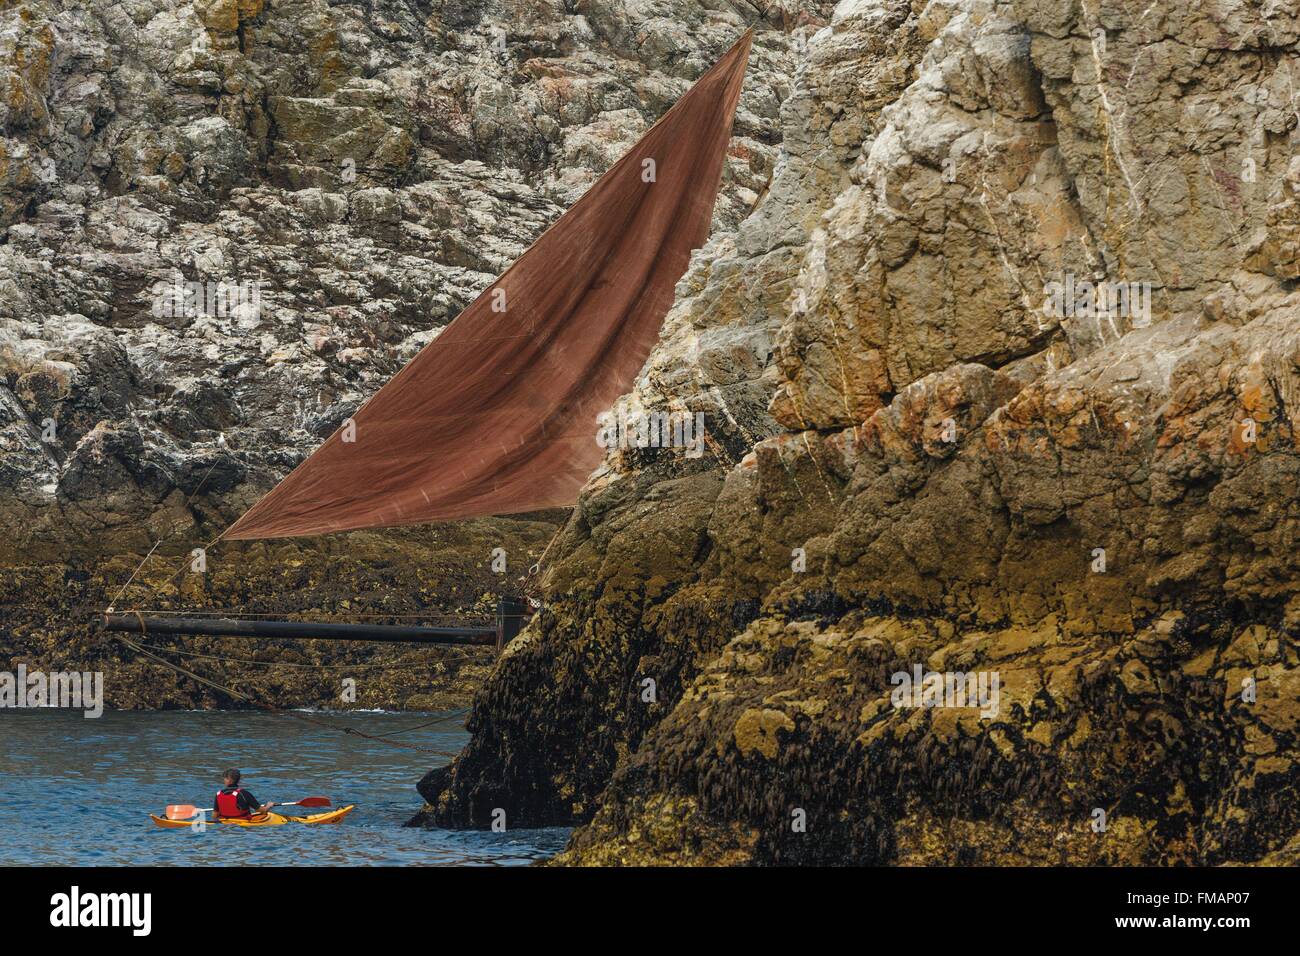 Frankreich, Finistere, Douarnenez, Erscheinungsbild der Front eines Segelbootes in einem Durchgang zwischen zwei Felsen Stockfoto